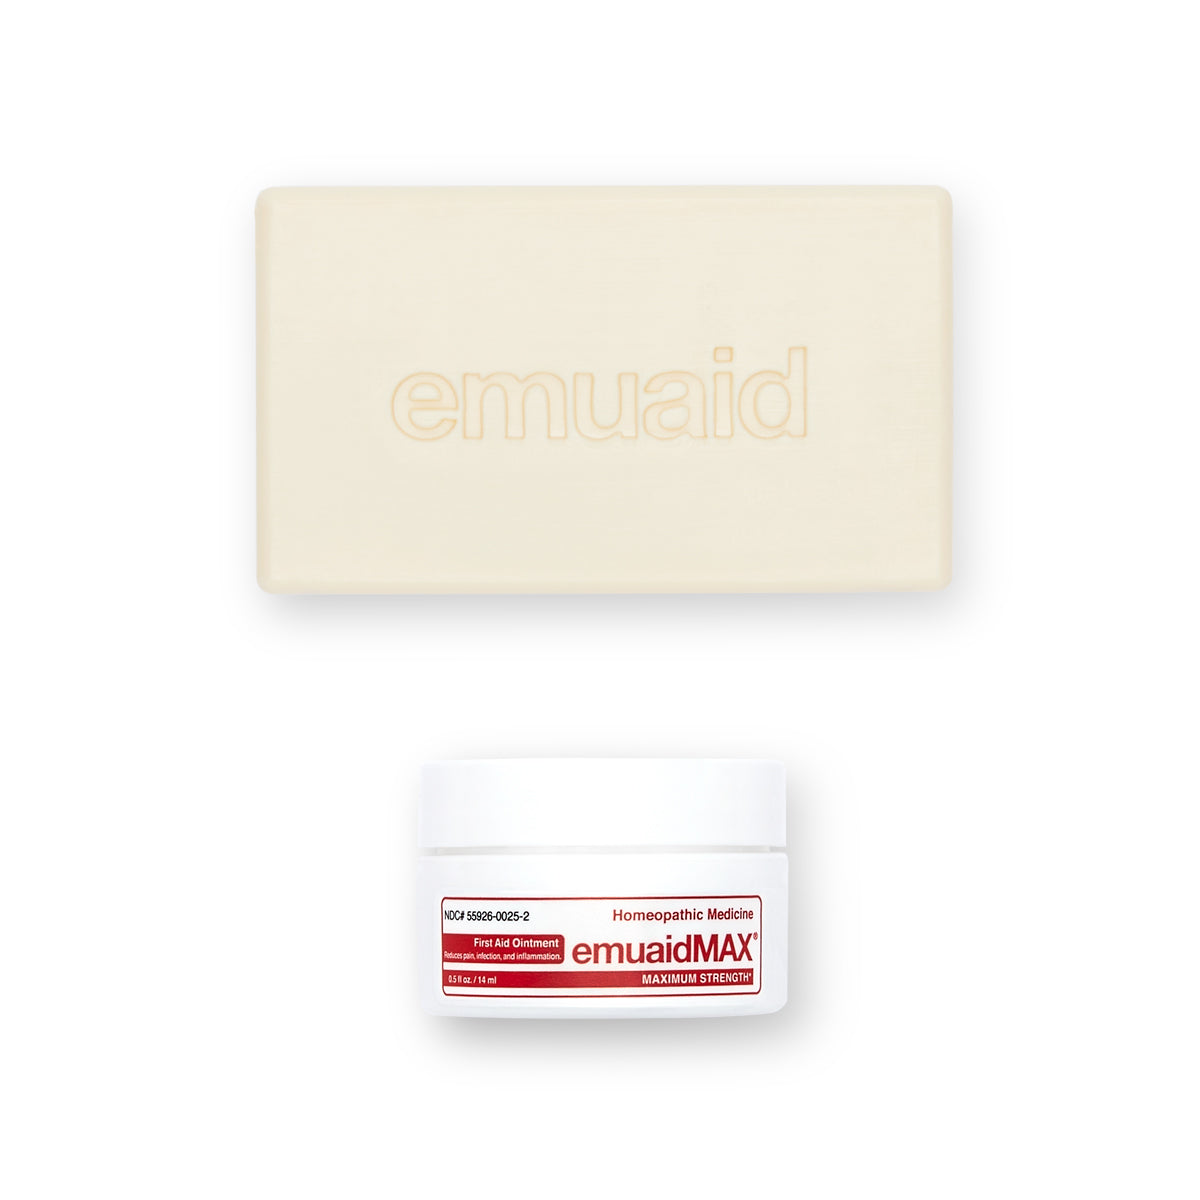 Voici une photo de EMUAIDMAX® First Aid Ointment 2oz et de EMUAID® Therapeutic Moisture Bar.